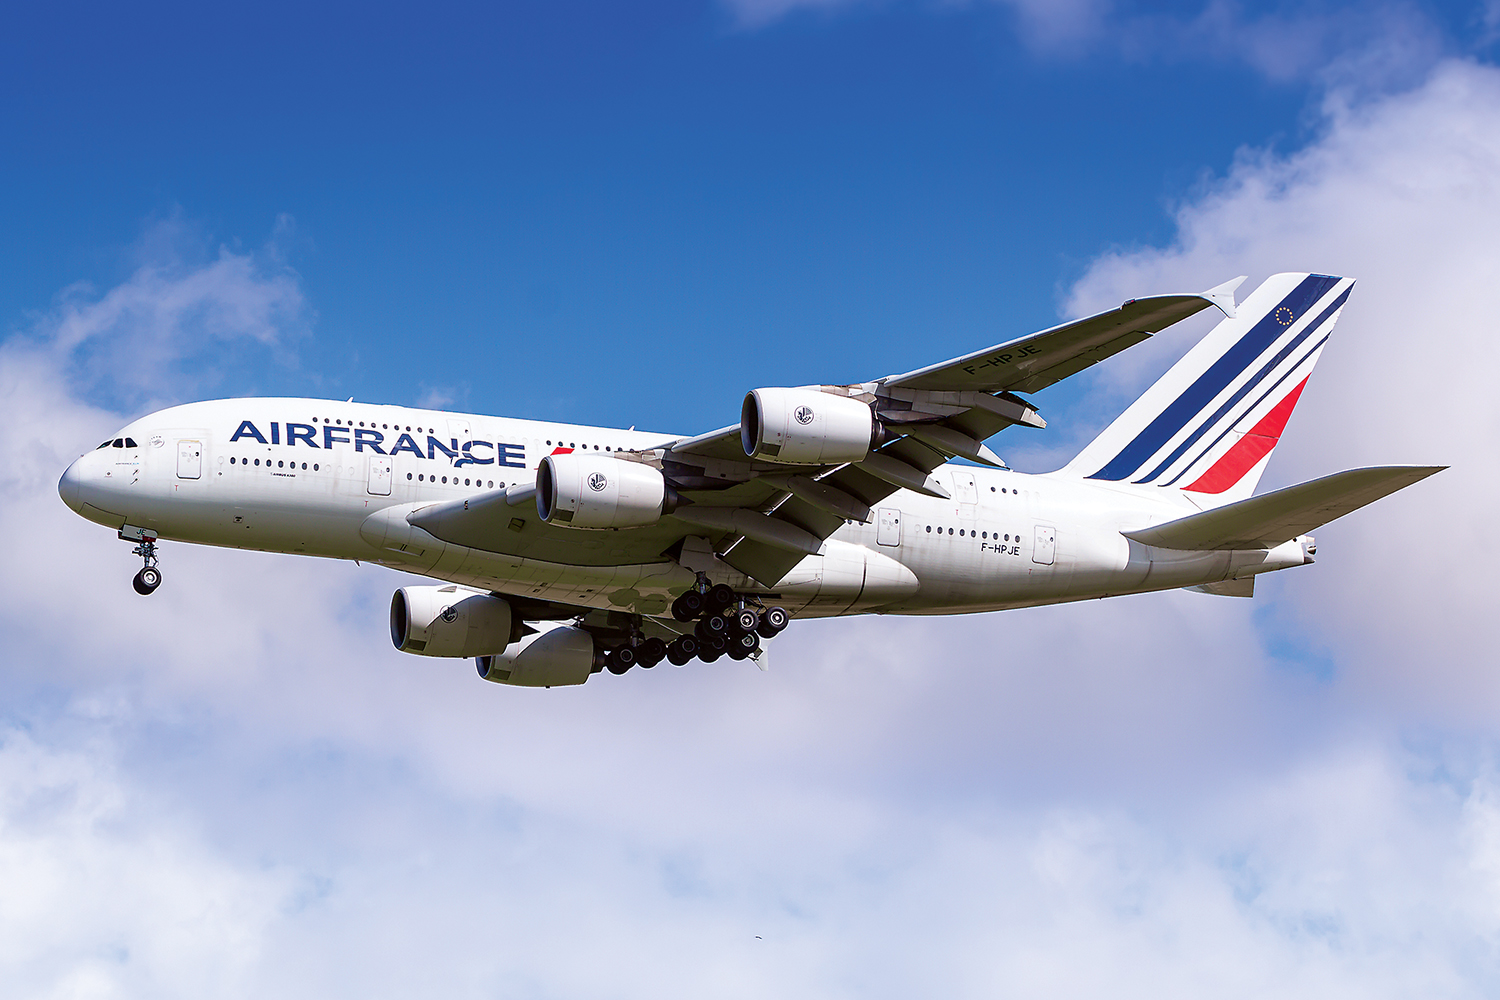 Air France Airbus A380 airplane at Paris Charles de Gaulle